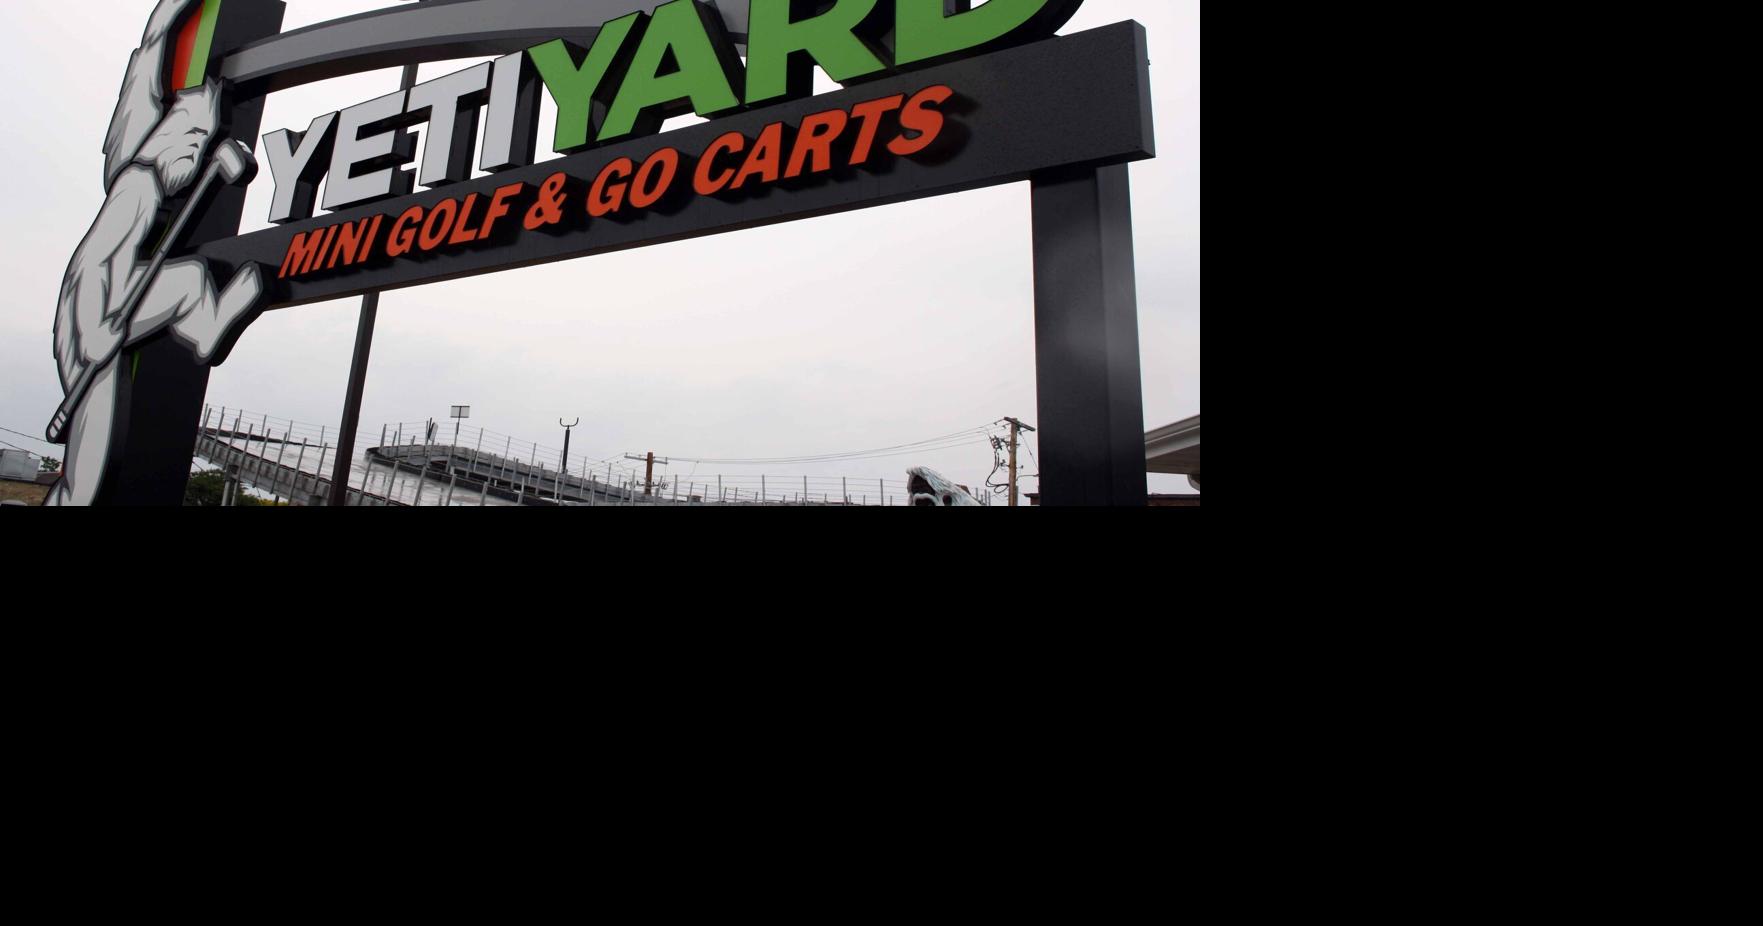 Adrenaline rush': Yeti-Yard opens electric go-kart track; mini